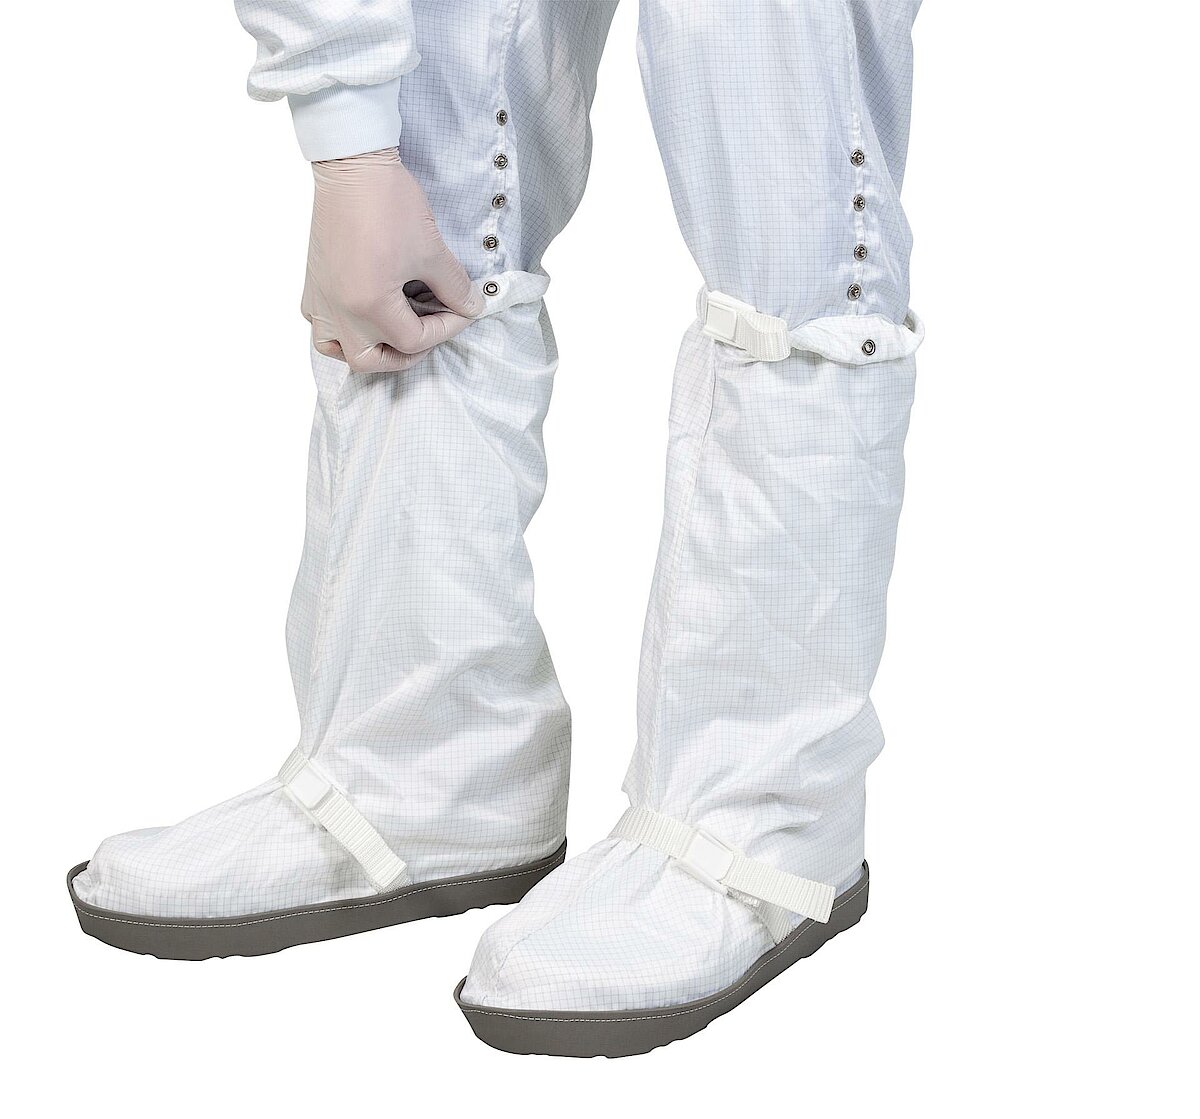 Couvre-botte réutilisable pour salle blanche avec semelle en caoutchouc antistatique